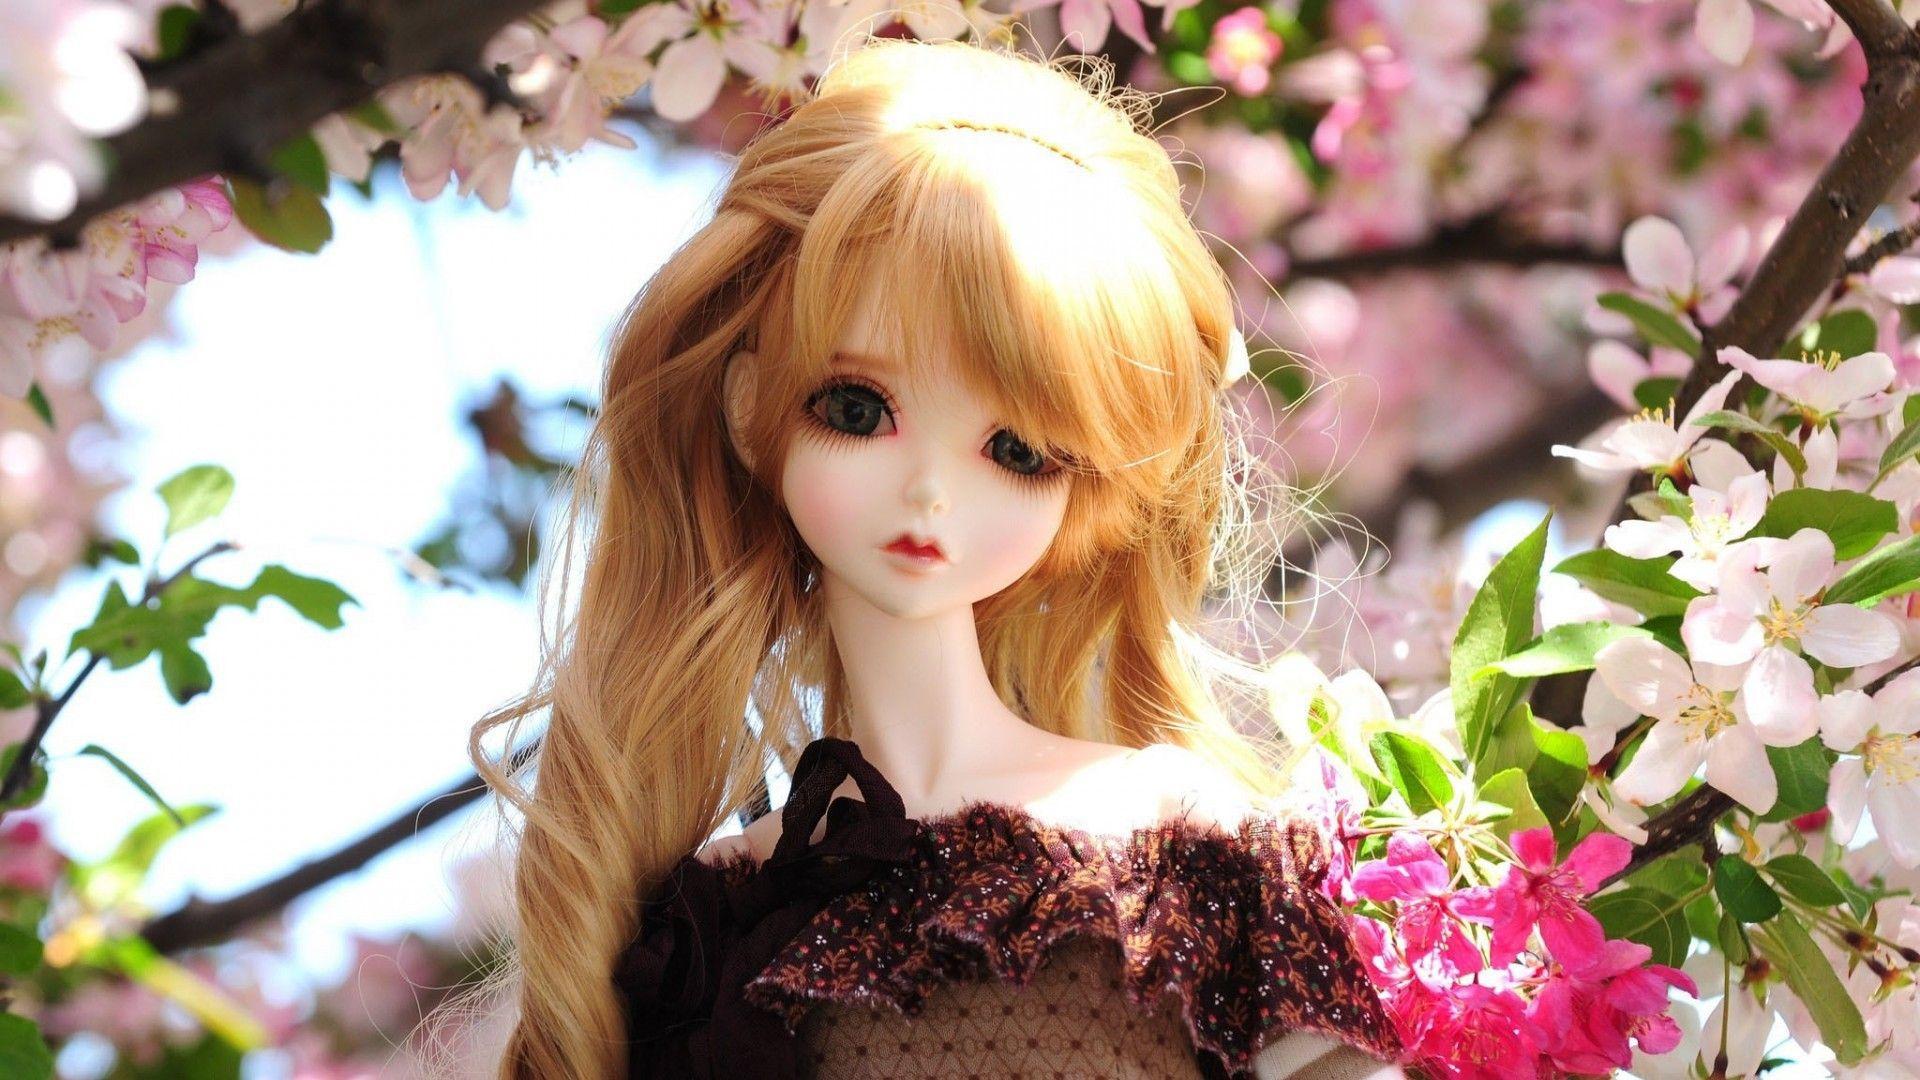 Cute Barbie HD Image #CuteBarbie #cute #barbie #hdwallpaper